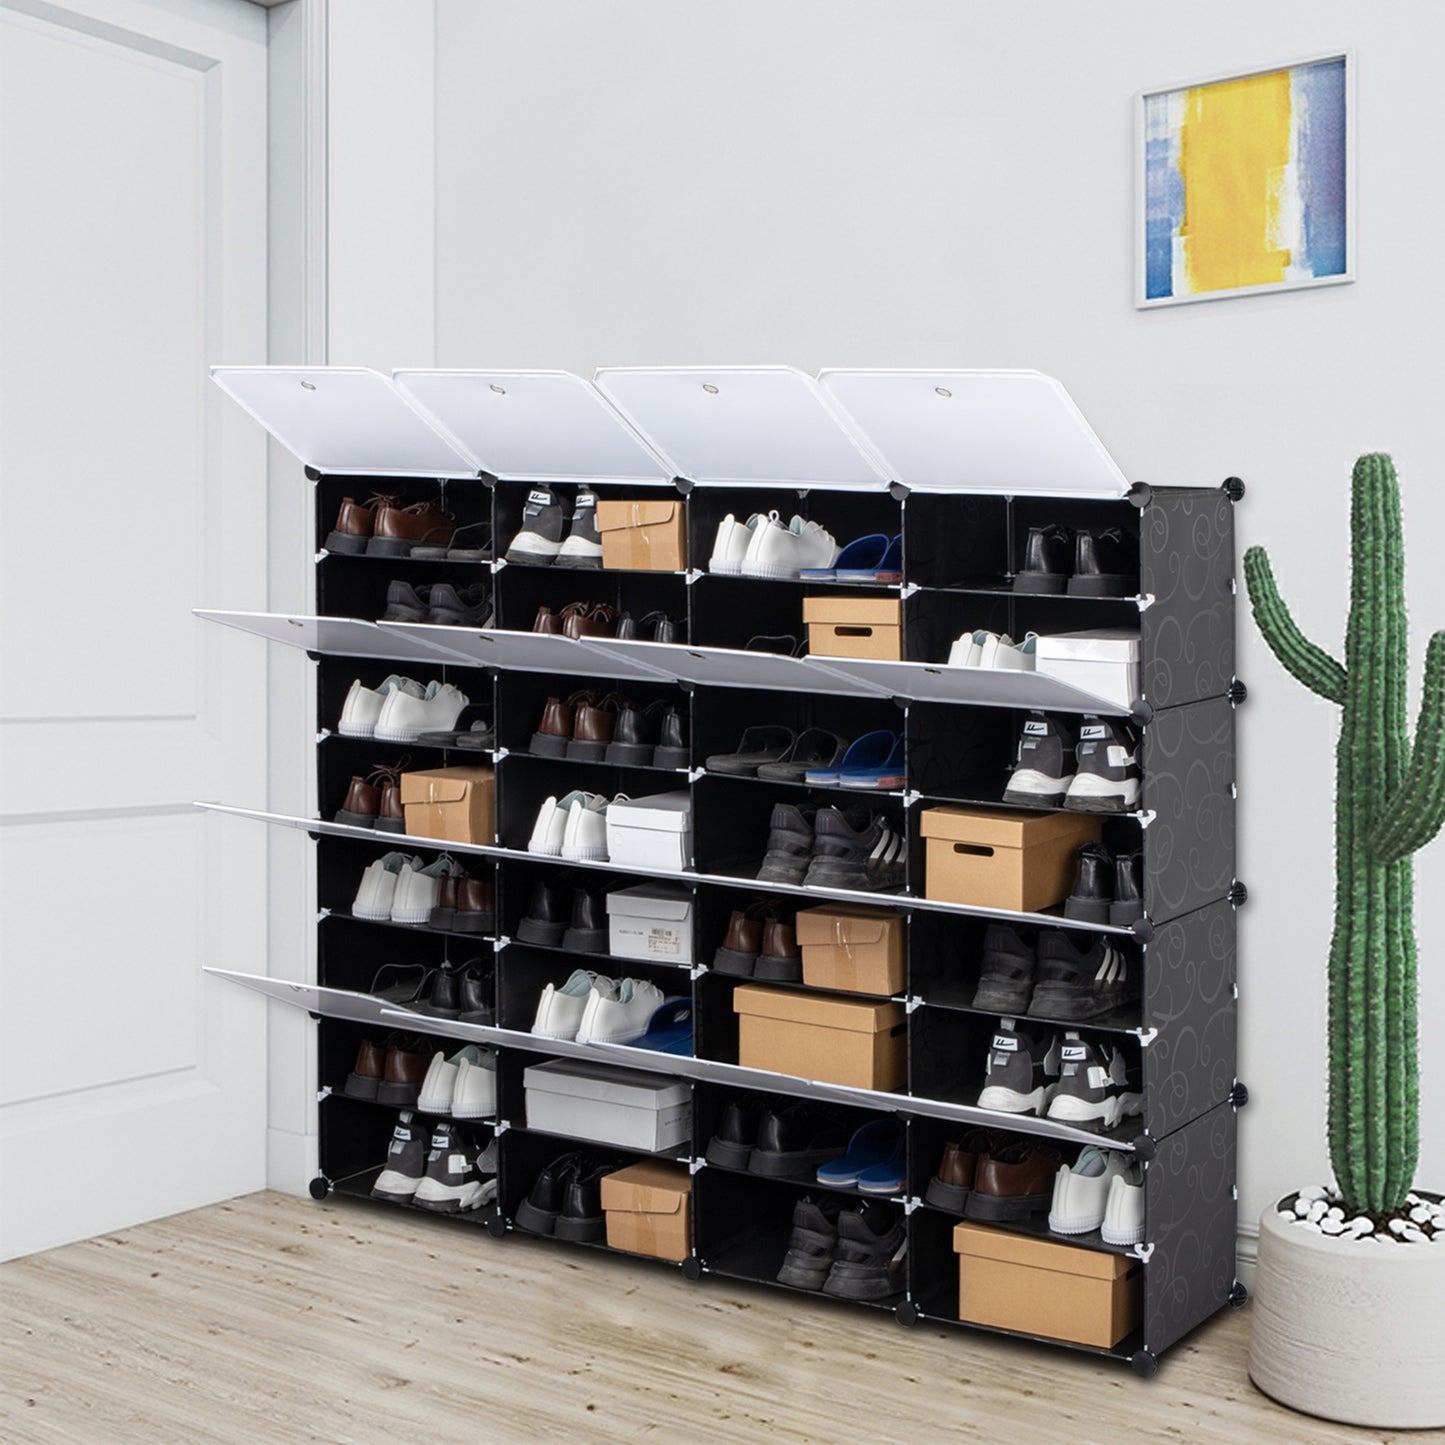 8 Tier Shoe Rack Organizer | 32 Grids Shoe Cabinet w/ Doors